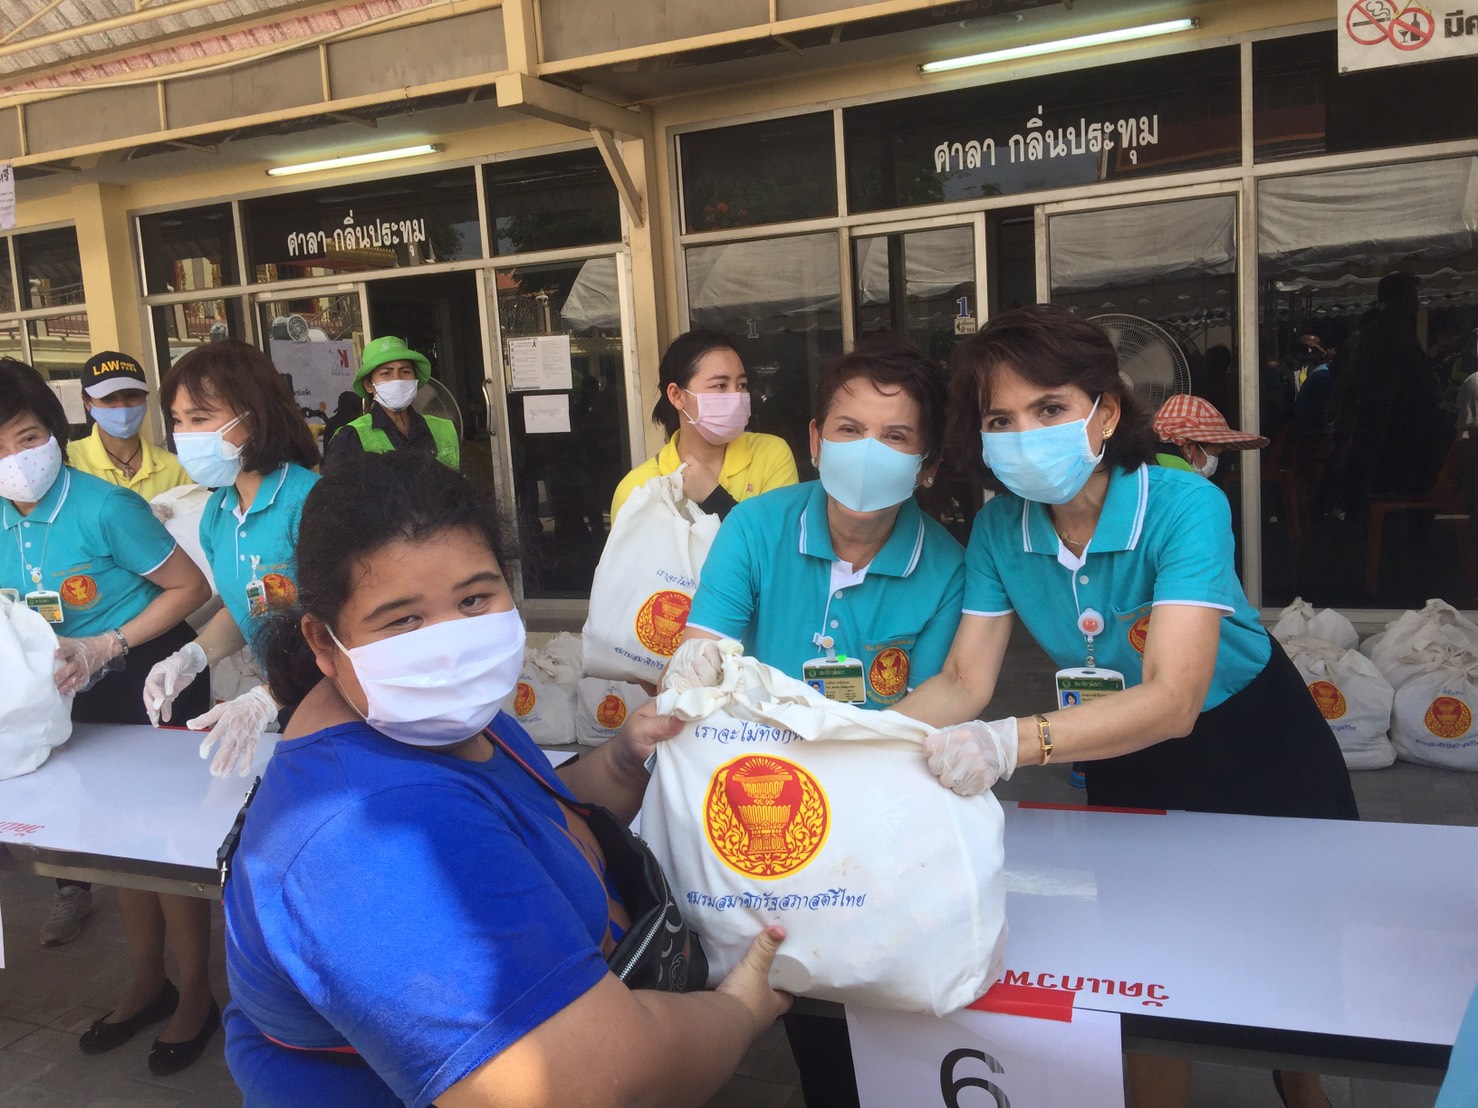 ชมรมสมาชิกรัฐสภาสตรีไทย มอบถุงยังชีพให้แก่ชุมชนโดยรอบรัฐสภาเพื่อเป็นการบรรเทาความเดือดร้อนจากสถานการณ์การแพร่ระบาดโควิด-19